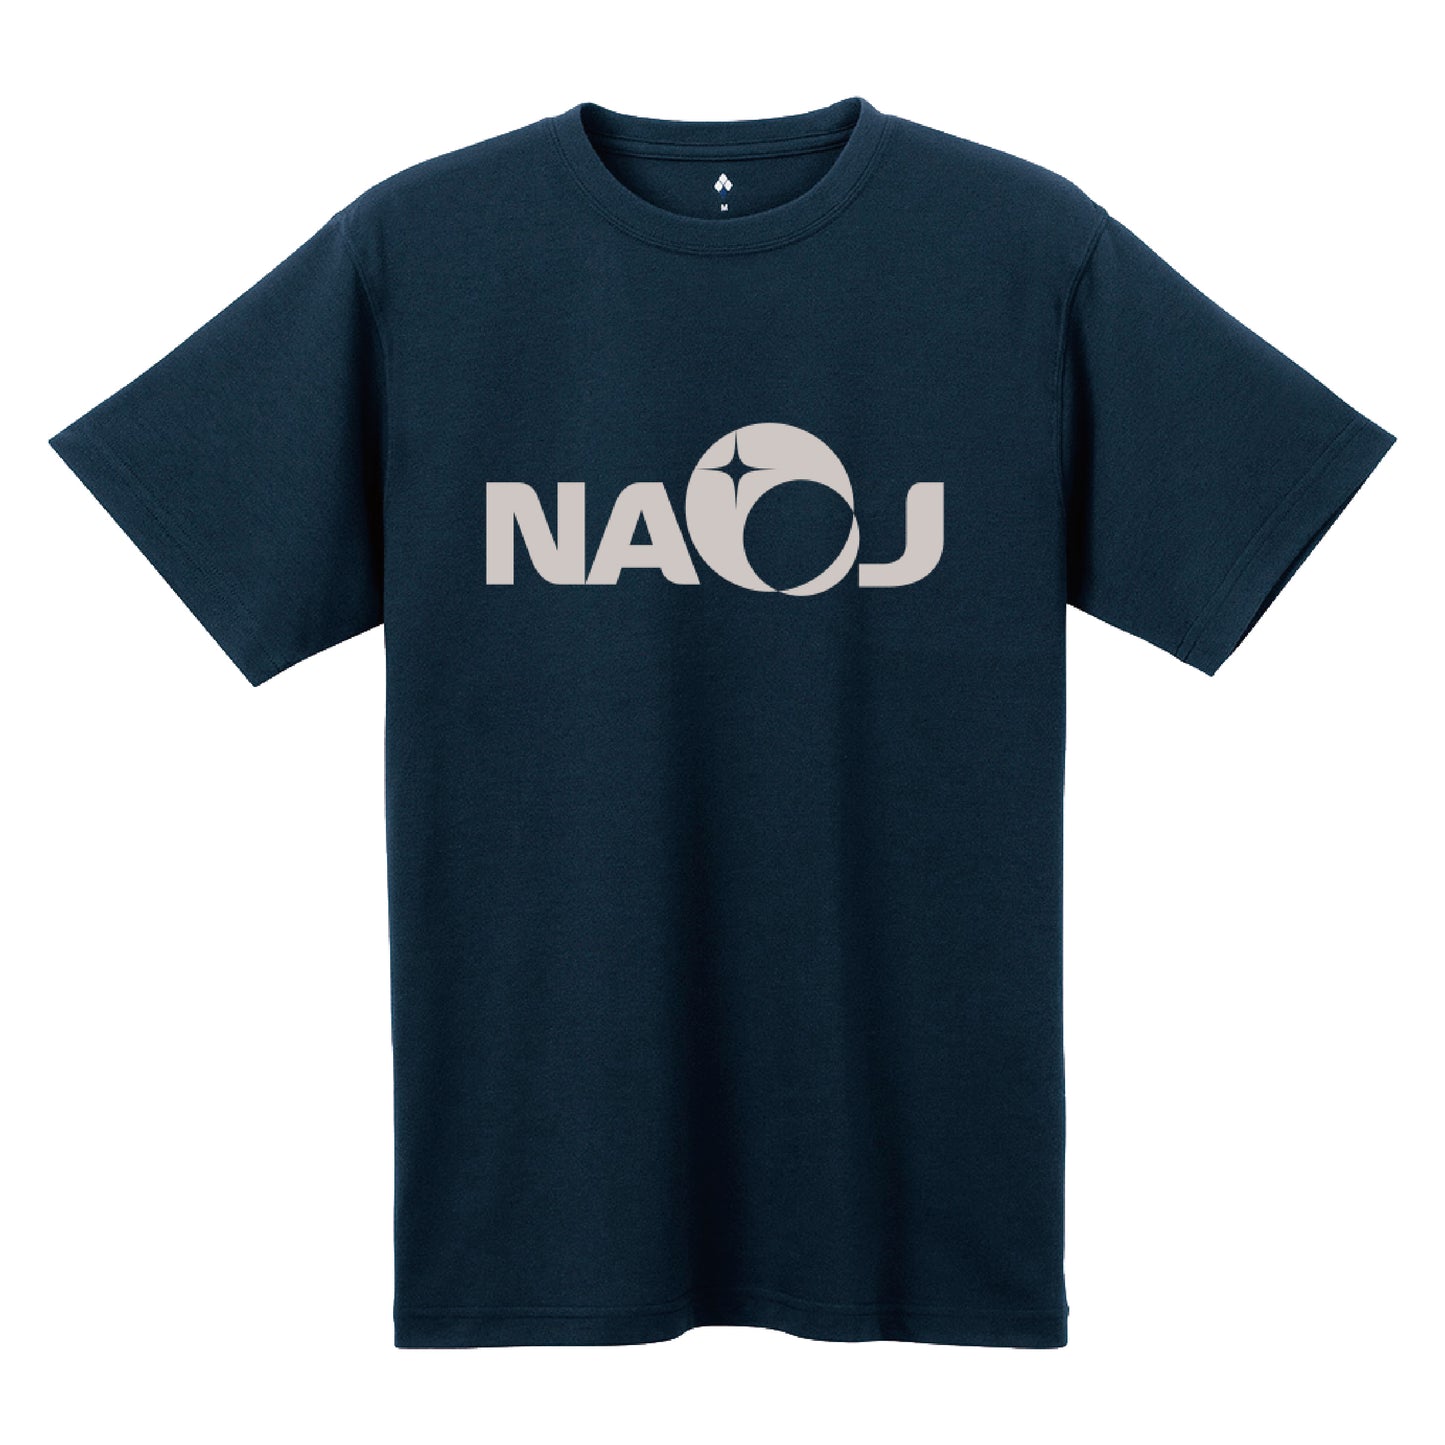 国立天文台 NAOJ ロゴマーク WIC. Tシャツ ネイビー S 00